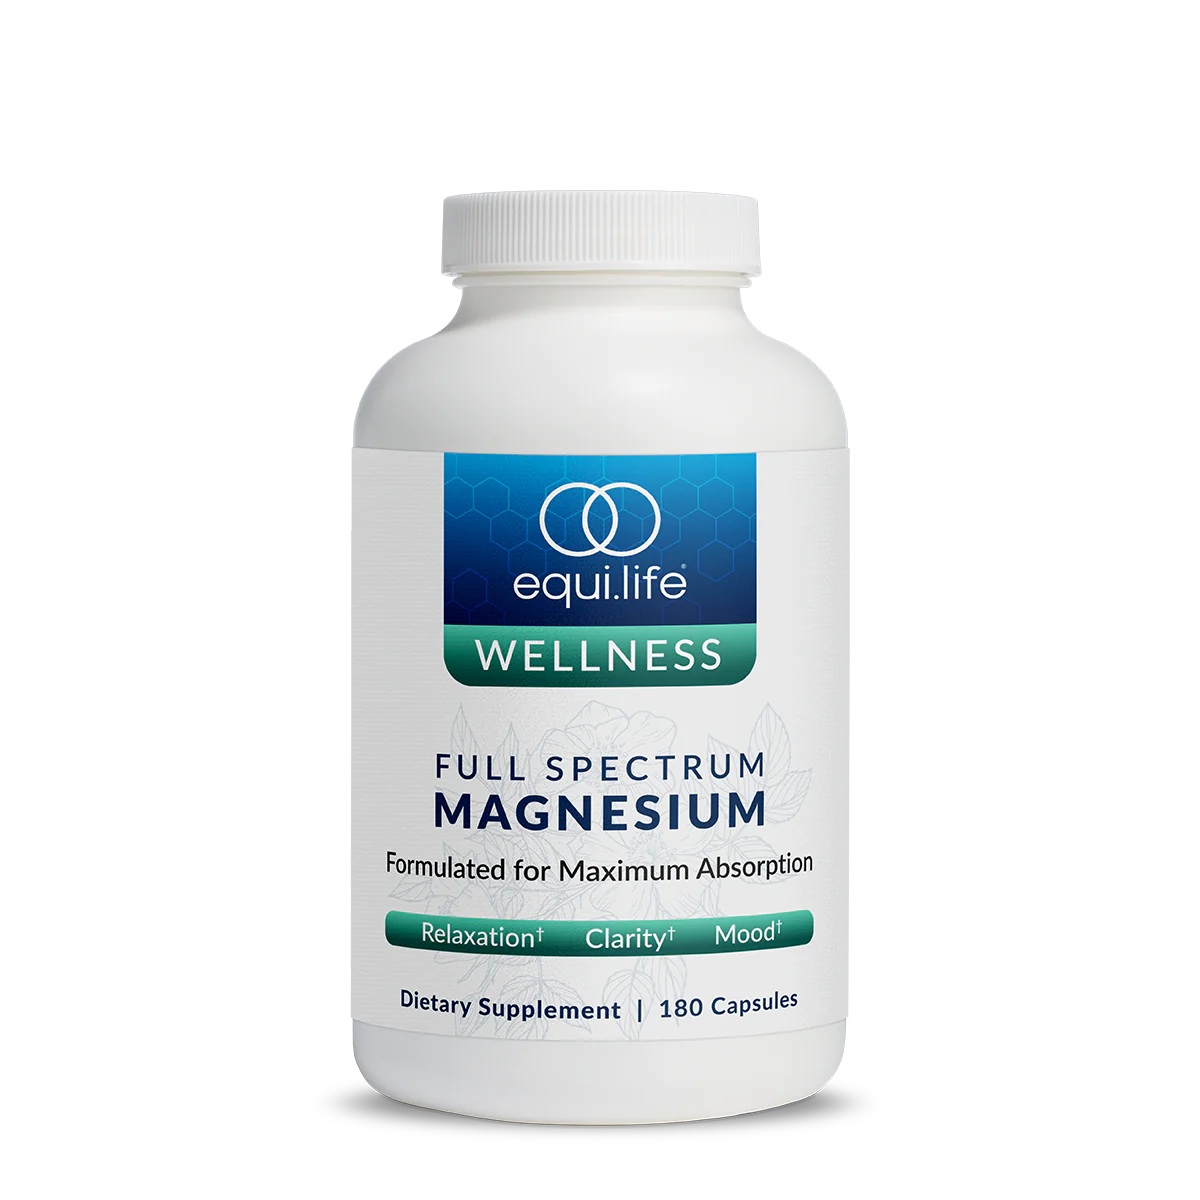 Full Spectrum Magnesium by Equi.life